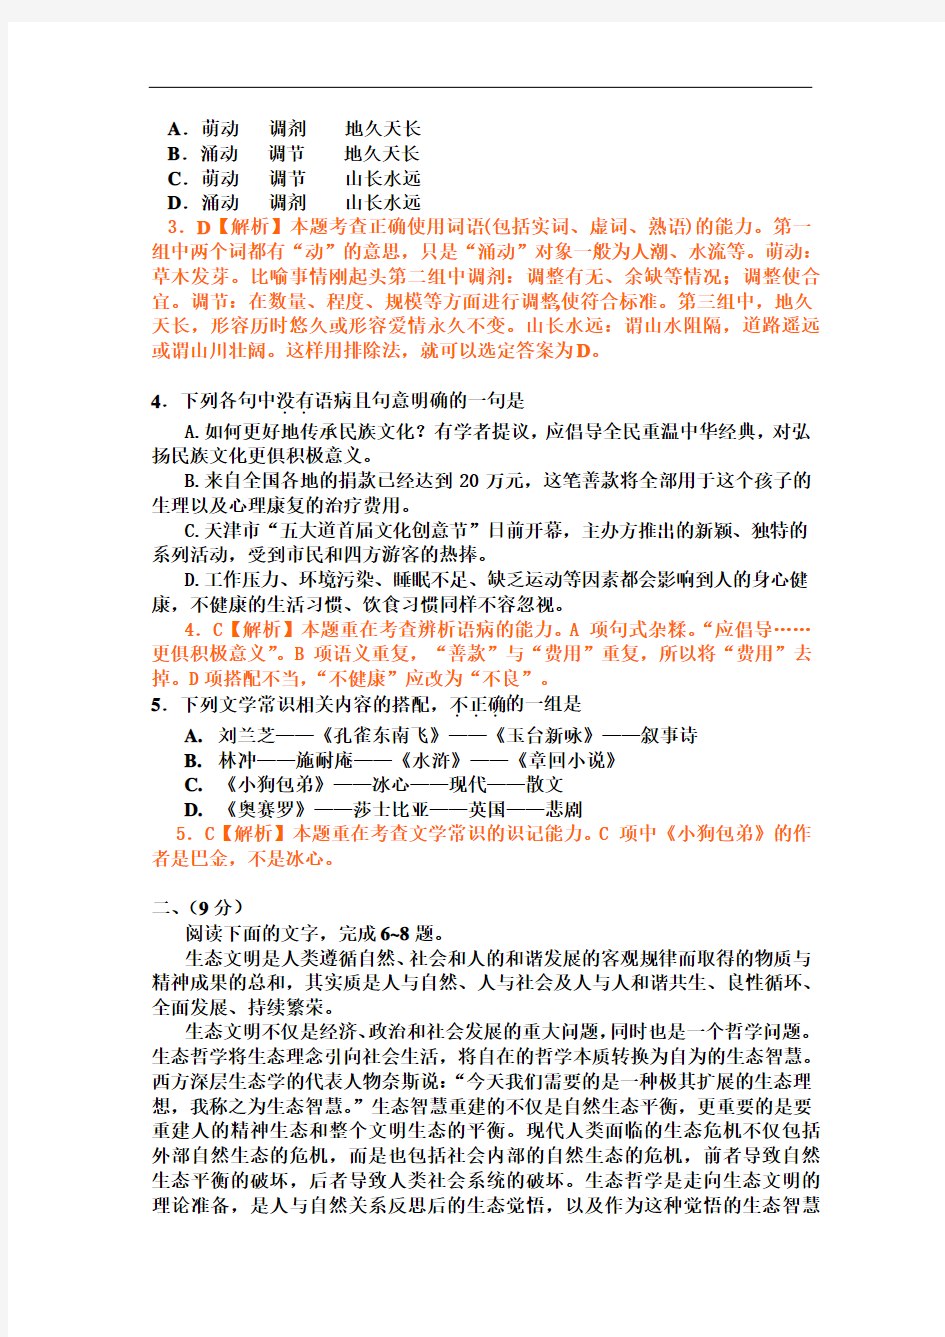 2012年天津市高考语文试题及答案解析